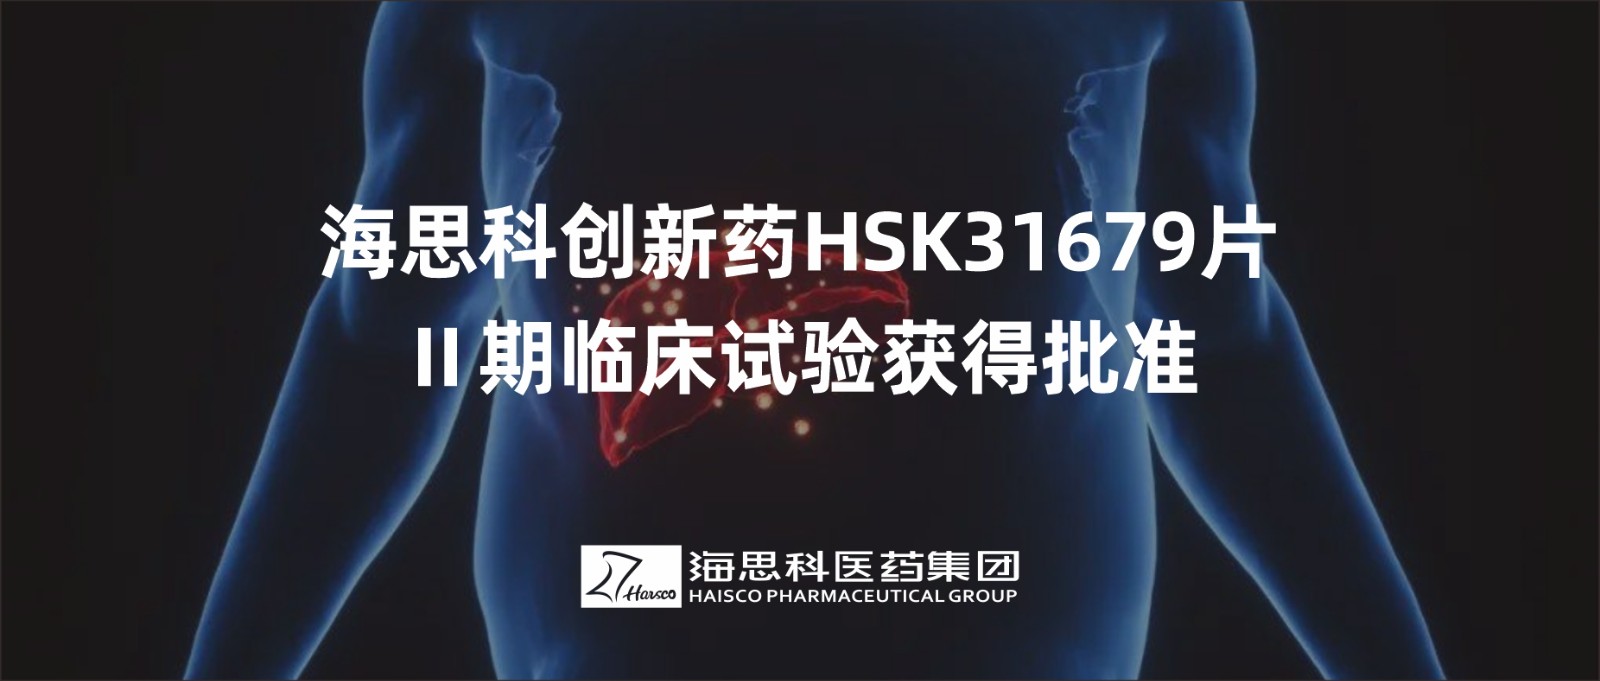 明升ms88创新药HSK31679片Ⅱ期临床试验获得批准